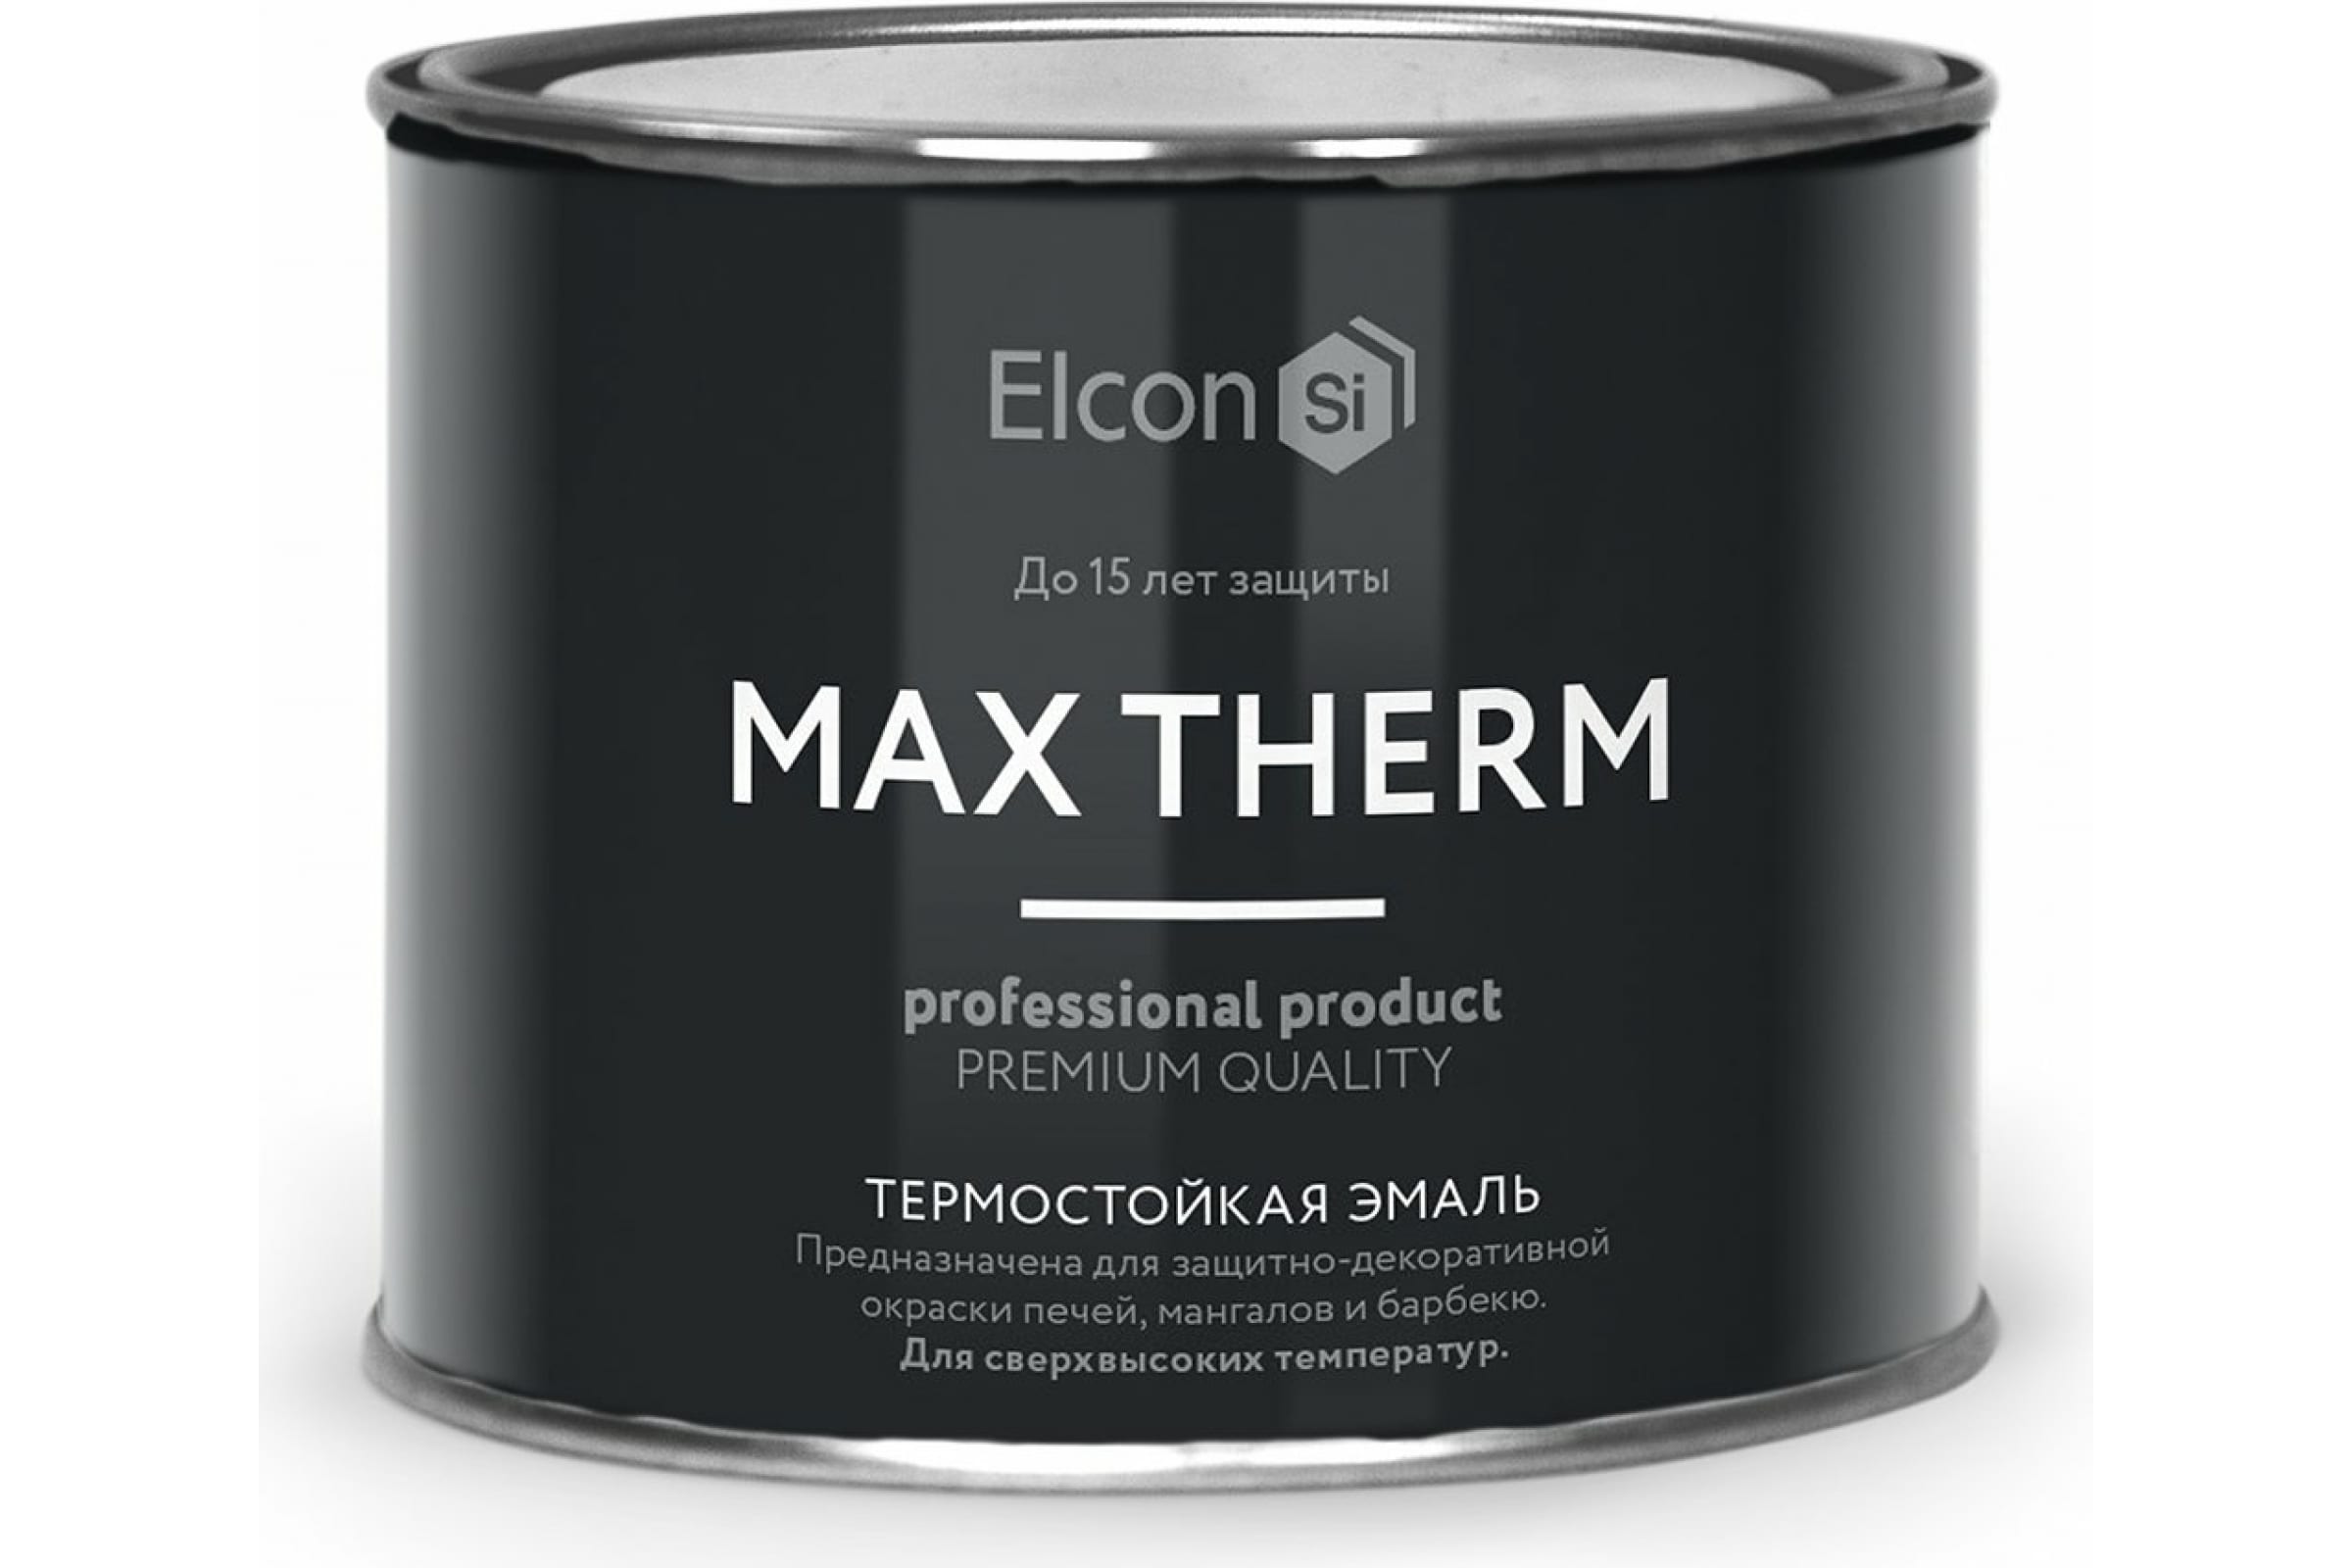 Термостойкая антикоррозионная эмаль Elcon Max Therm до 400 градусов, 0,4 л, желтая термостойкая антикоррозионная эмаль elcon max therm до 400 градусов 0 4 л серая